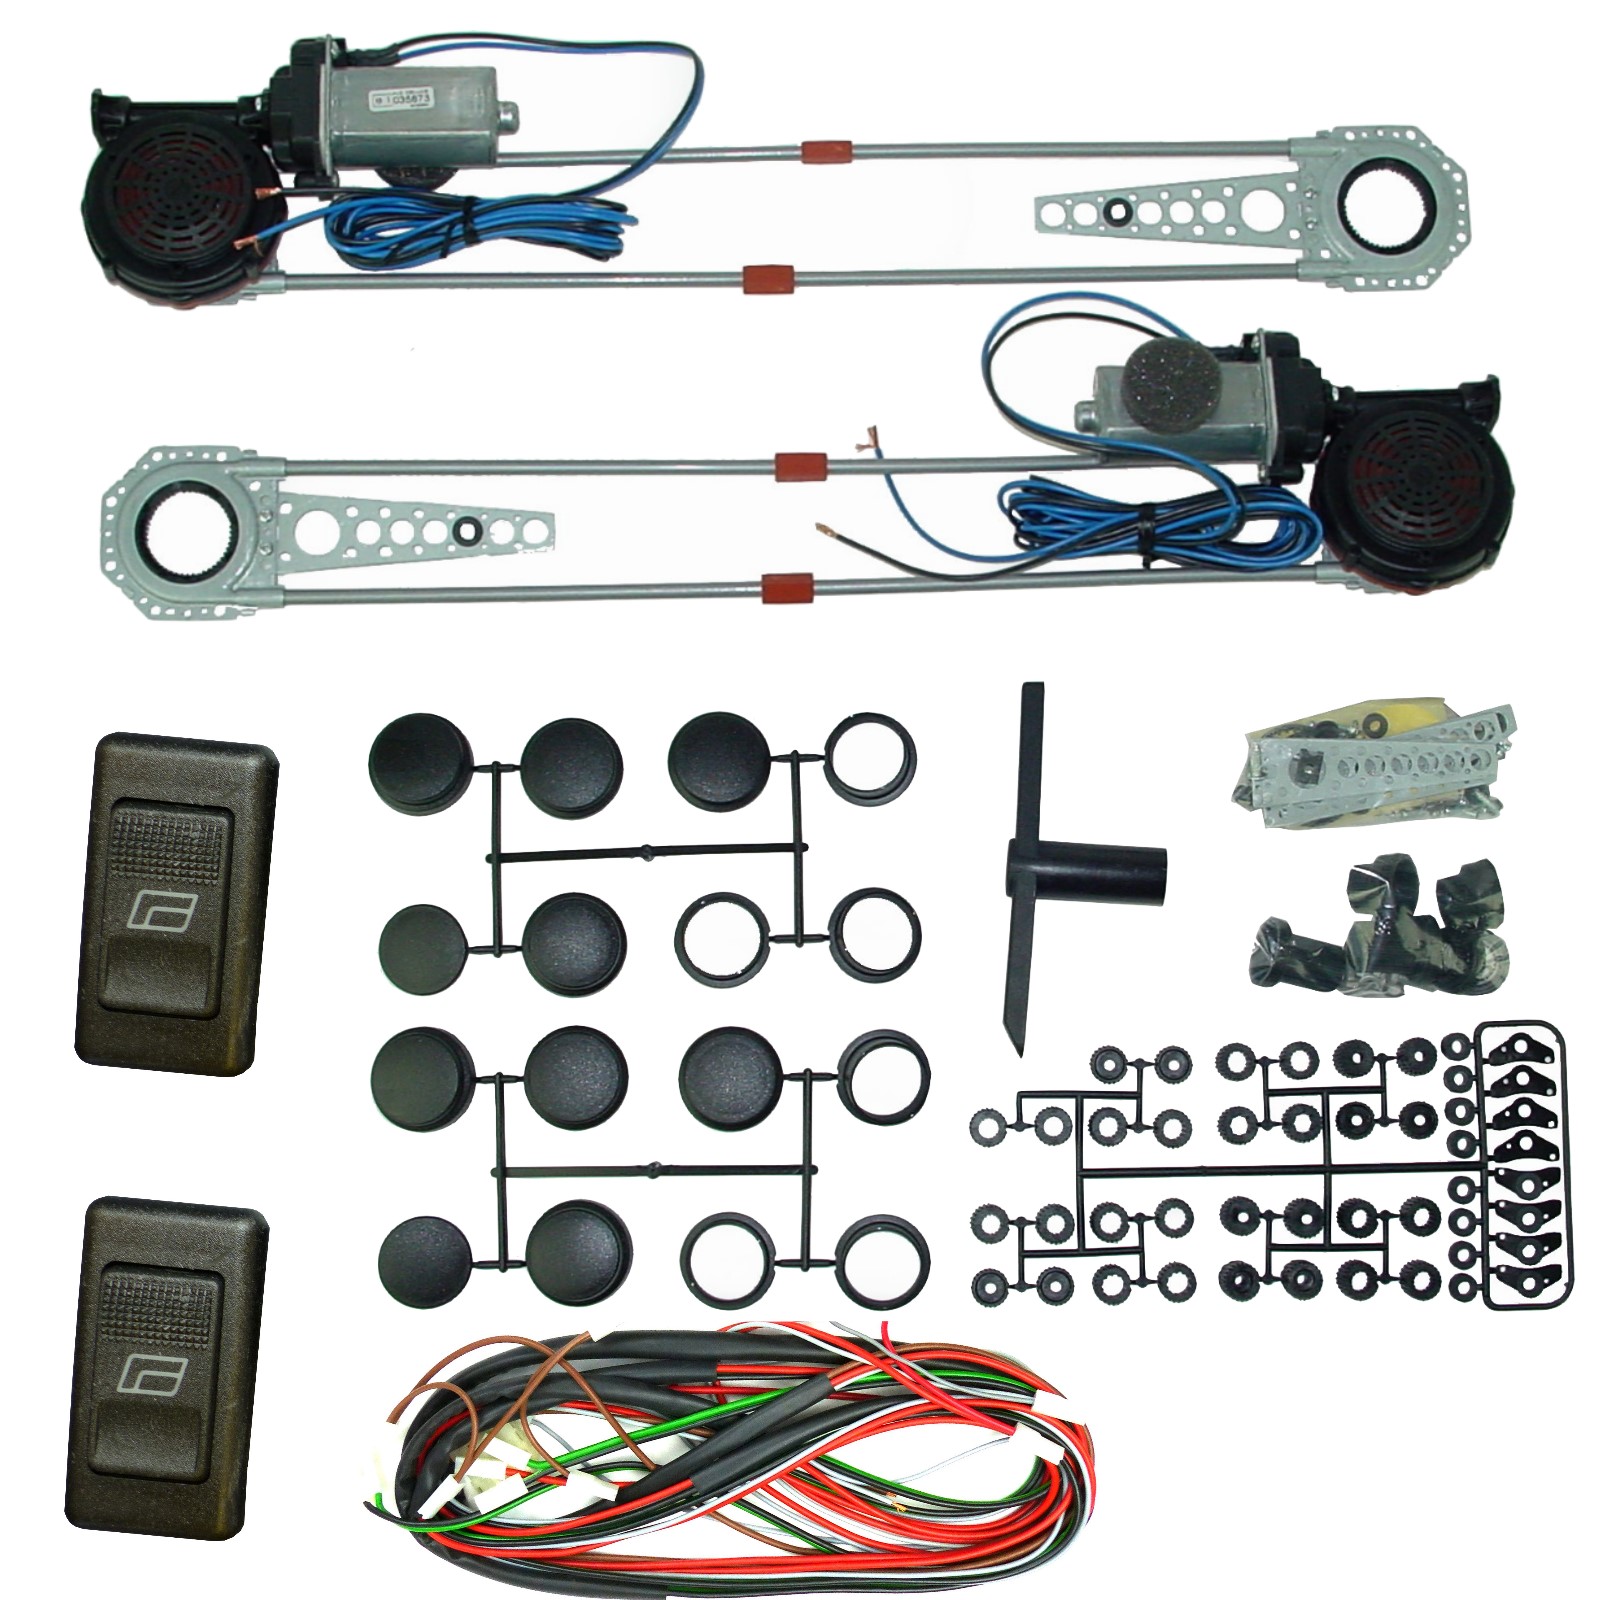 ALBACH - 1 Satz SPAL elektrische Fensterheber (2 Türen) incl. 2 x Schalter  Typ 105 + Kabelsatz NEU für viele Fahrzeuge geeignet